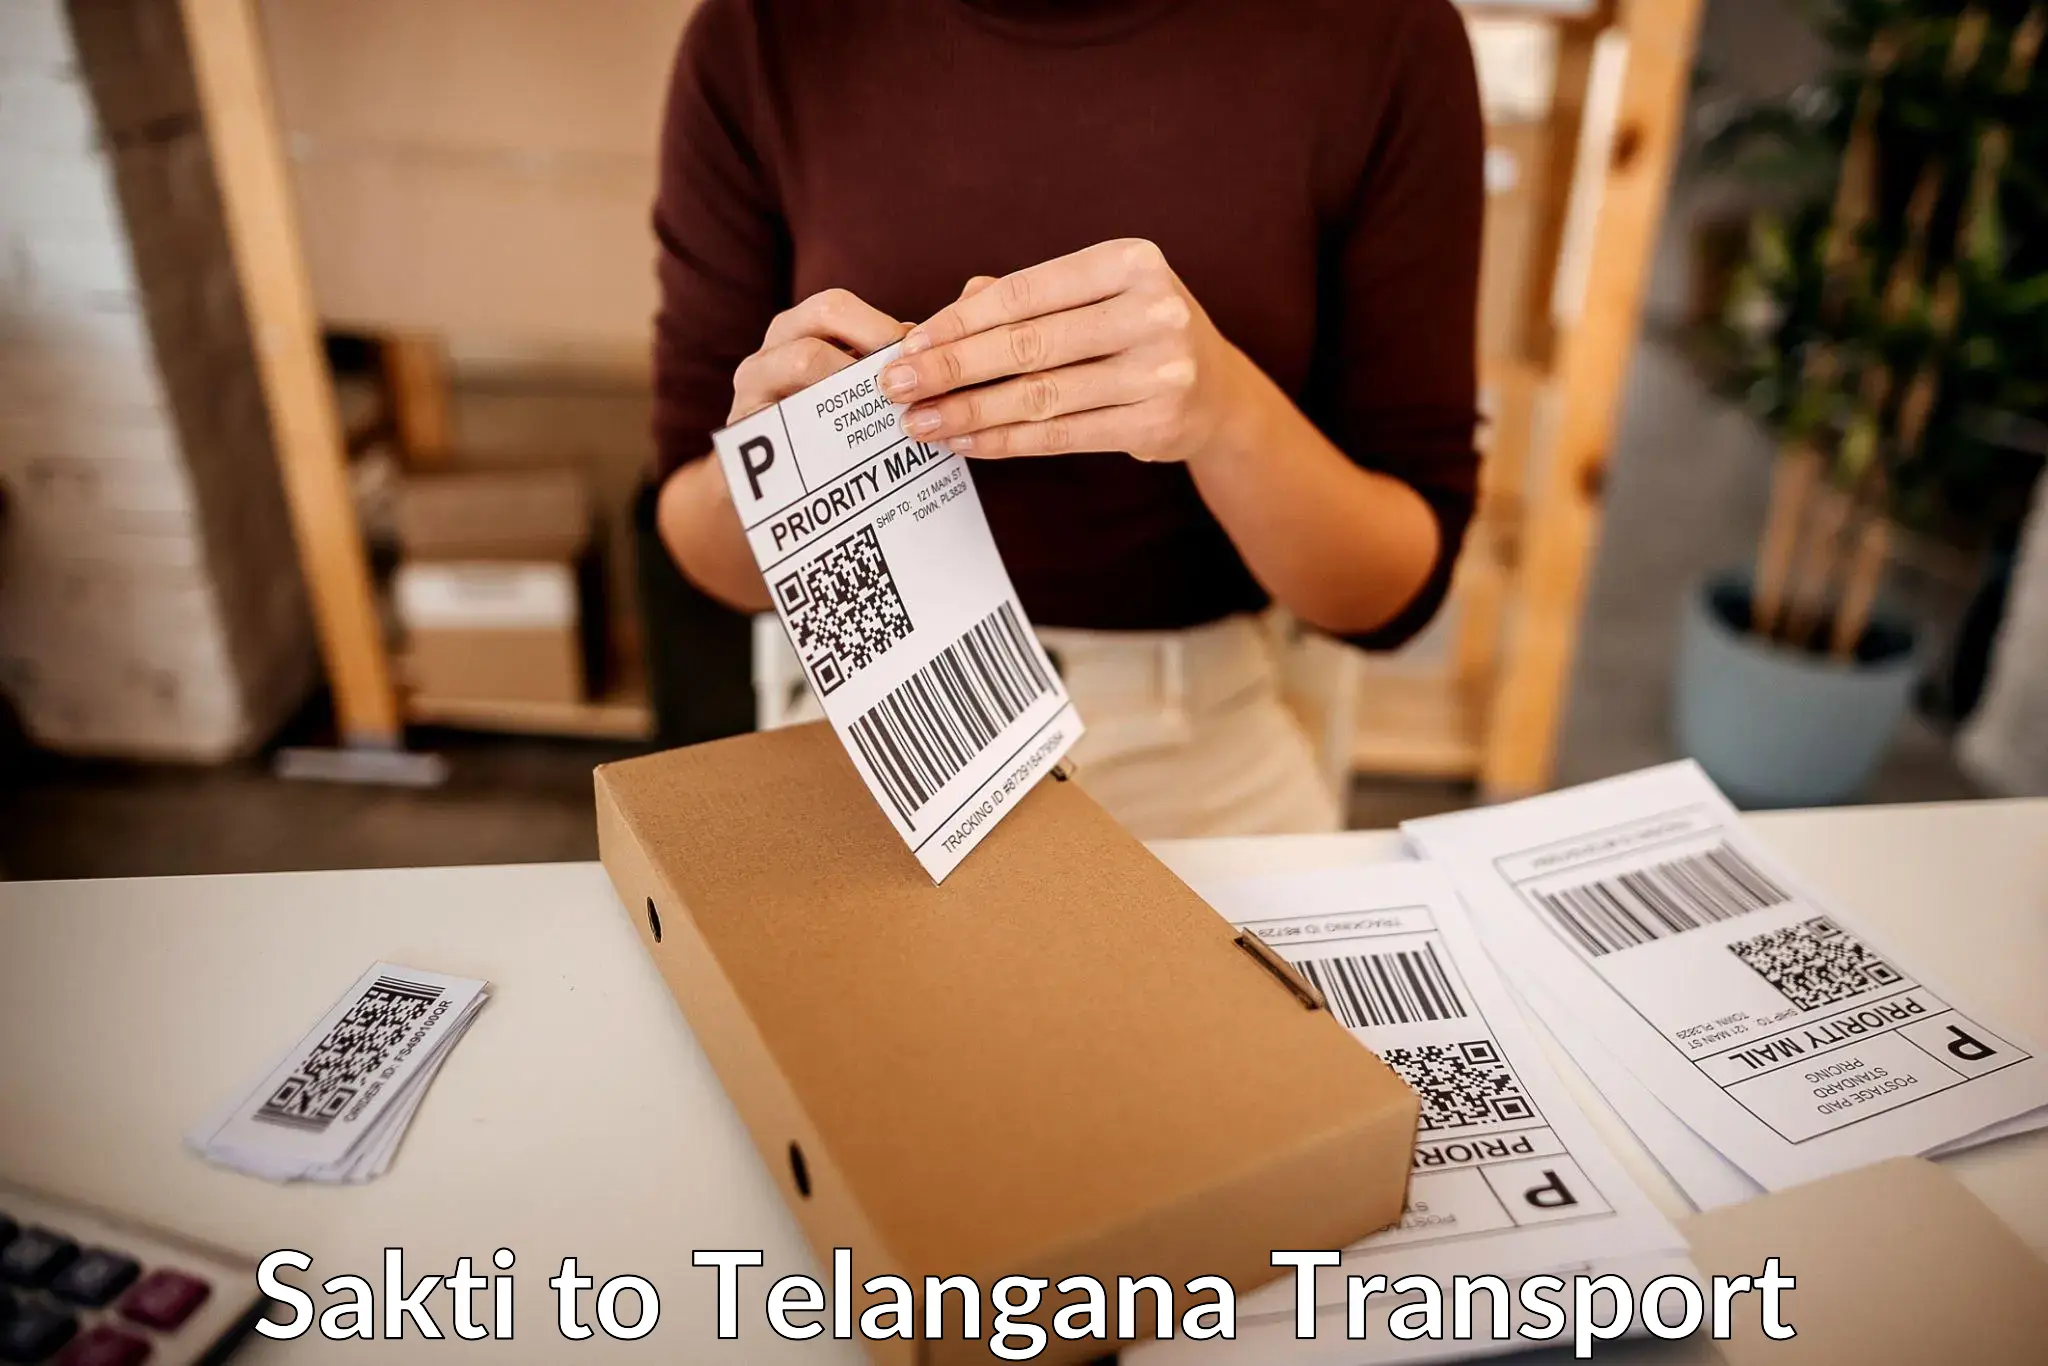 Furniture transport service Sakti to Nirmal